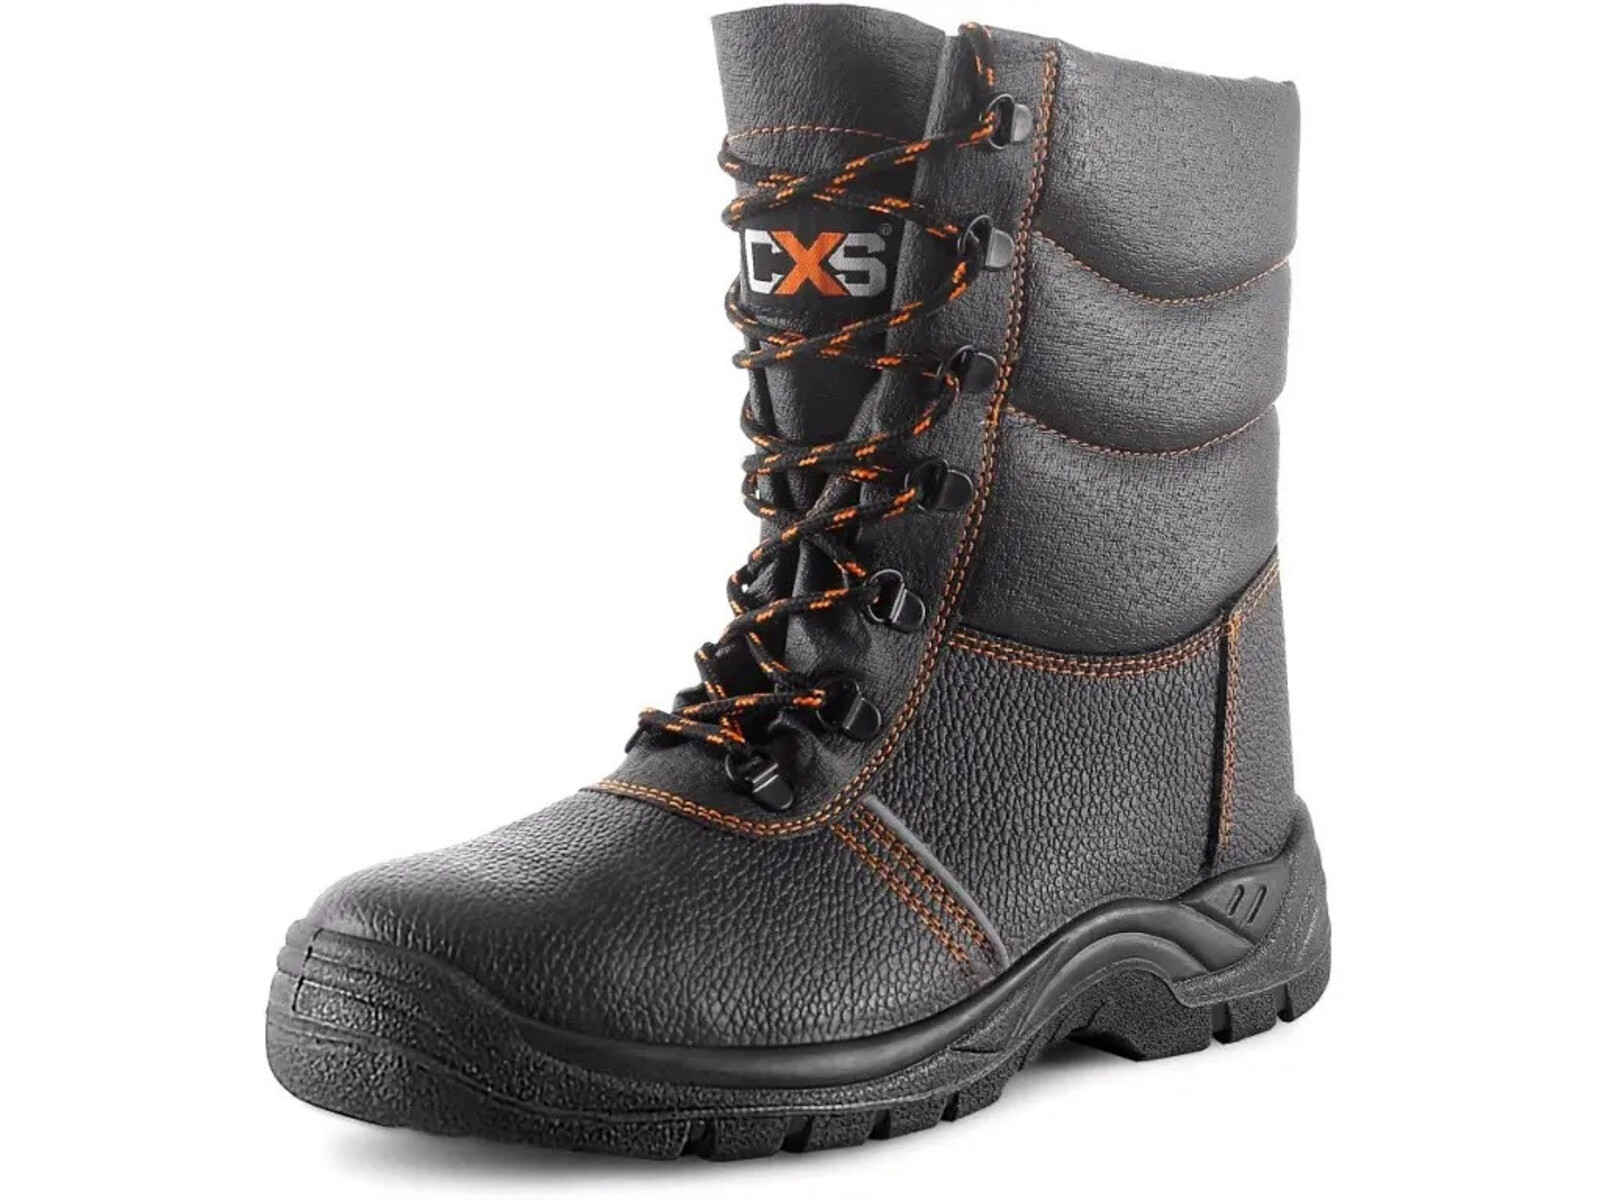 Zimná bezpečnostná poloholeňová obuv CXS Stone Topaz Winter S3 SRC - veľkosť: 39, farba: čierna/oranžová